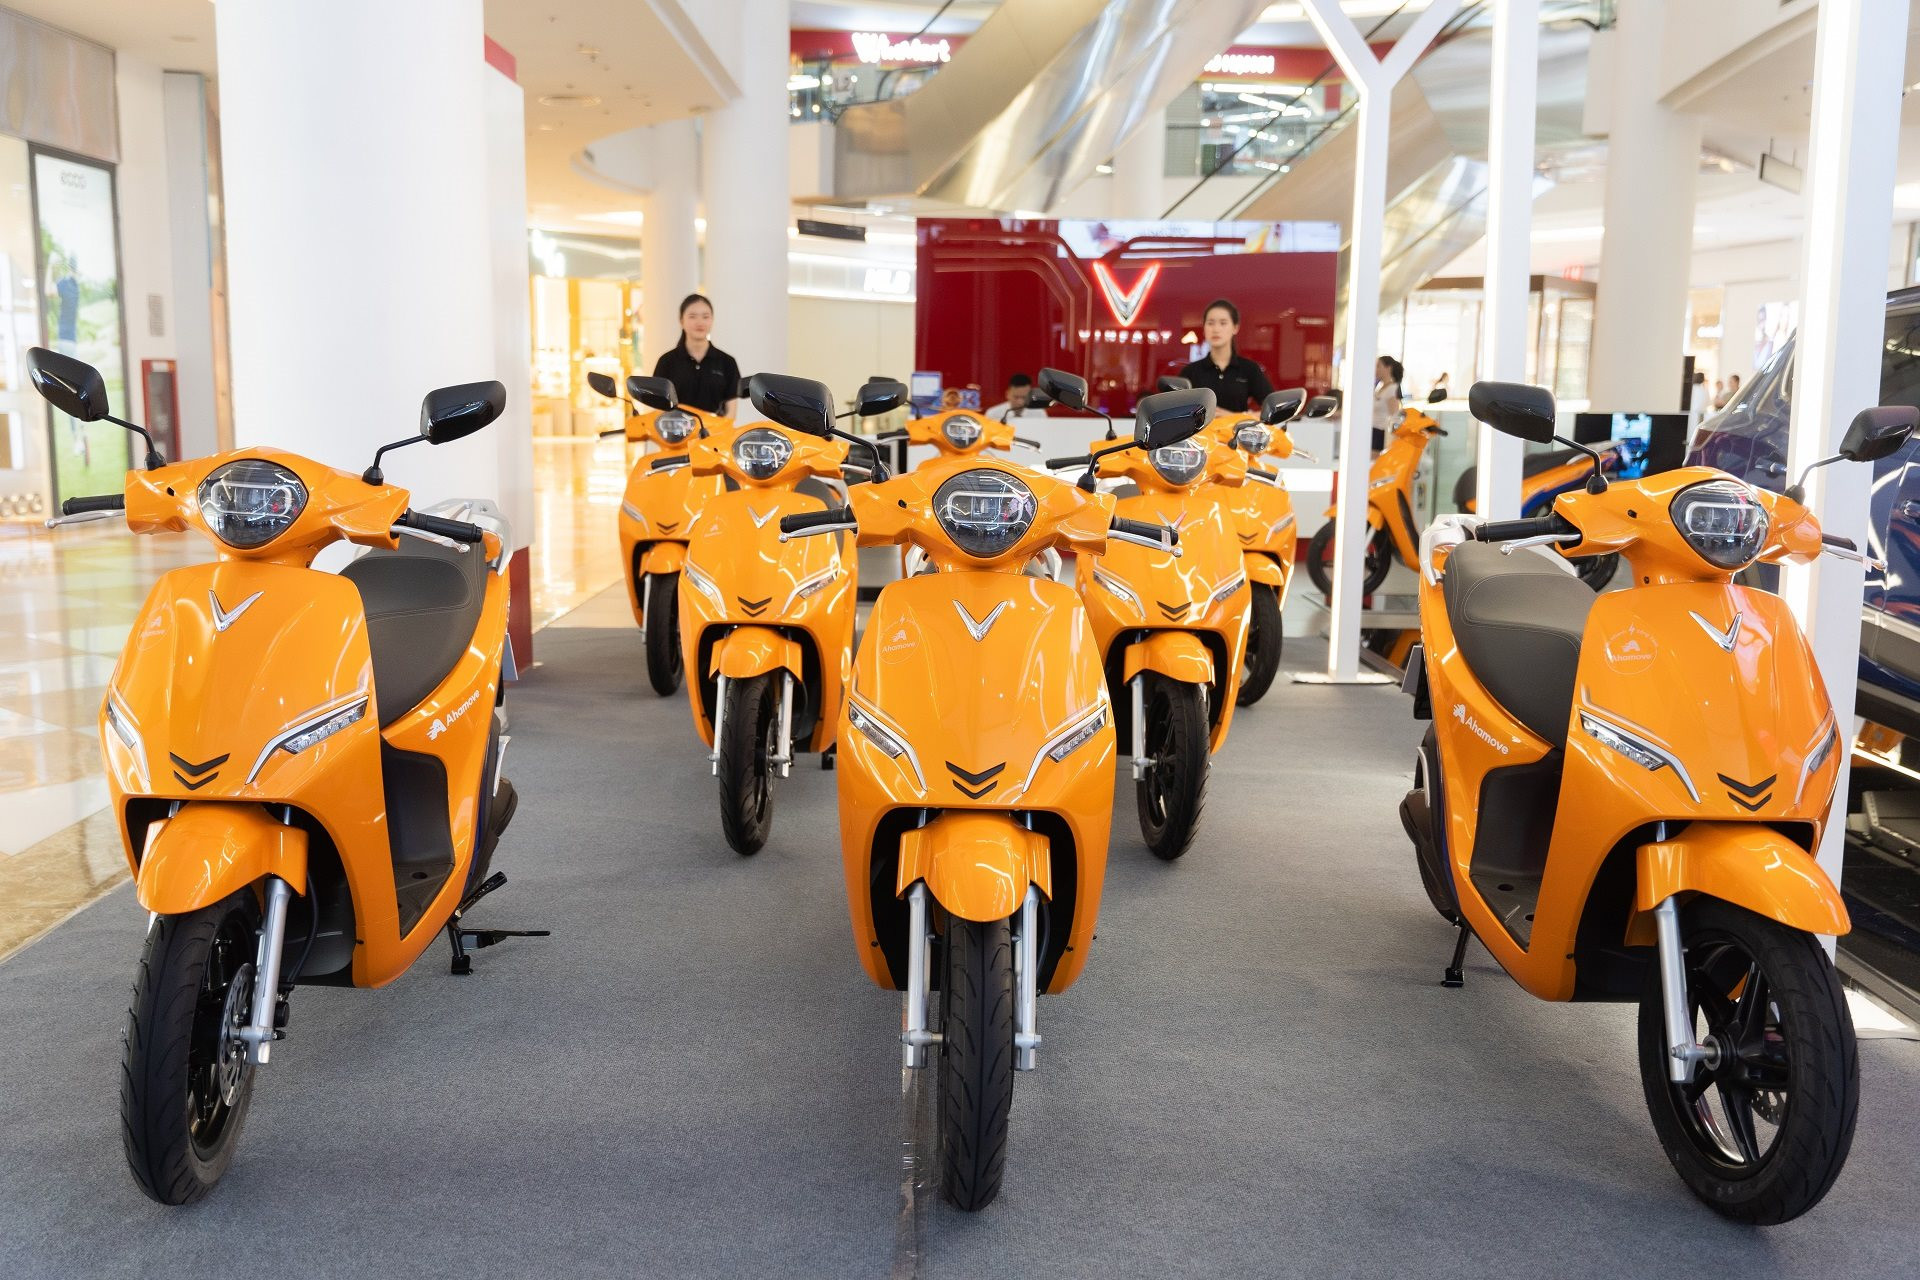 Ahamove mua 200 xe máy điện VinFast, dự kiến mua thêm 1.000 xe trong năm nay để mở dịch vụ hoàn toàn mới này - Ảnh 1.